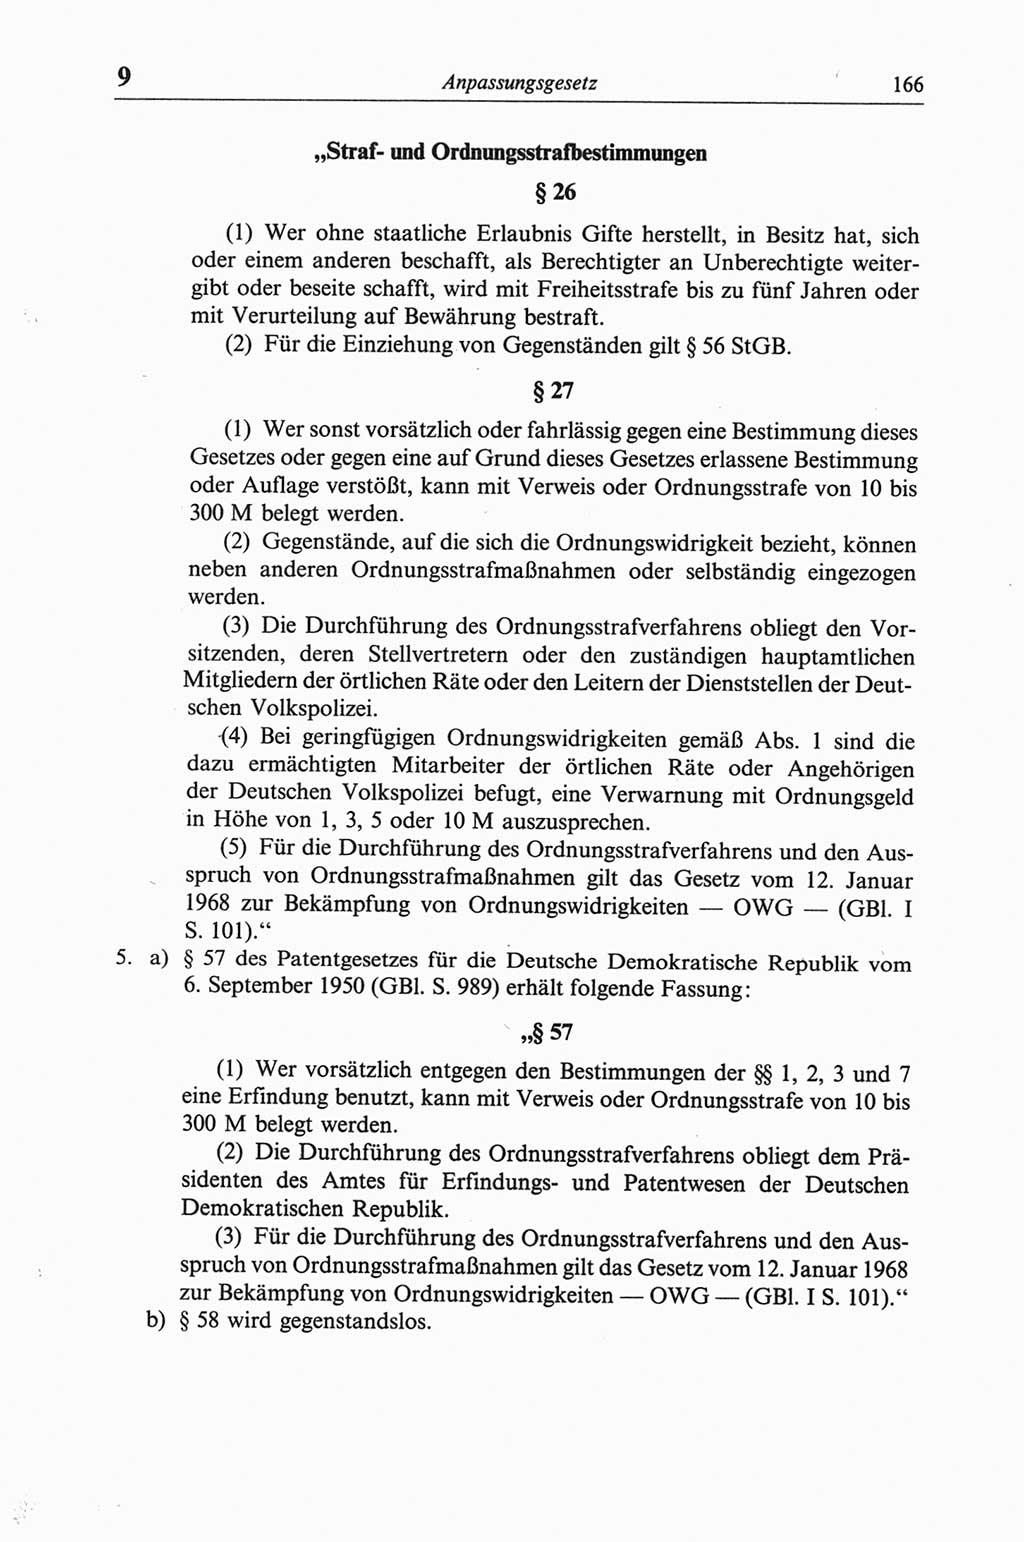 Strafgesetzbuch (StGB) der Deutschen Demokratischen Republik (DDR) und angrenzende Gesetze und Bestimmungen 1968, Seite 166 (StGB Ges. Best. DDR 1968, S. 166)